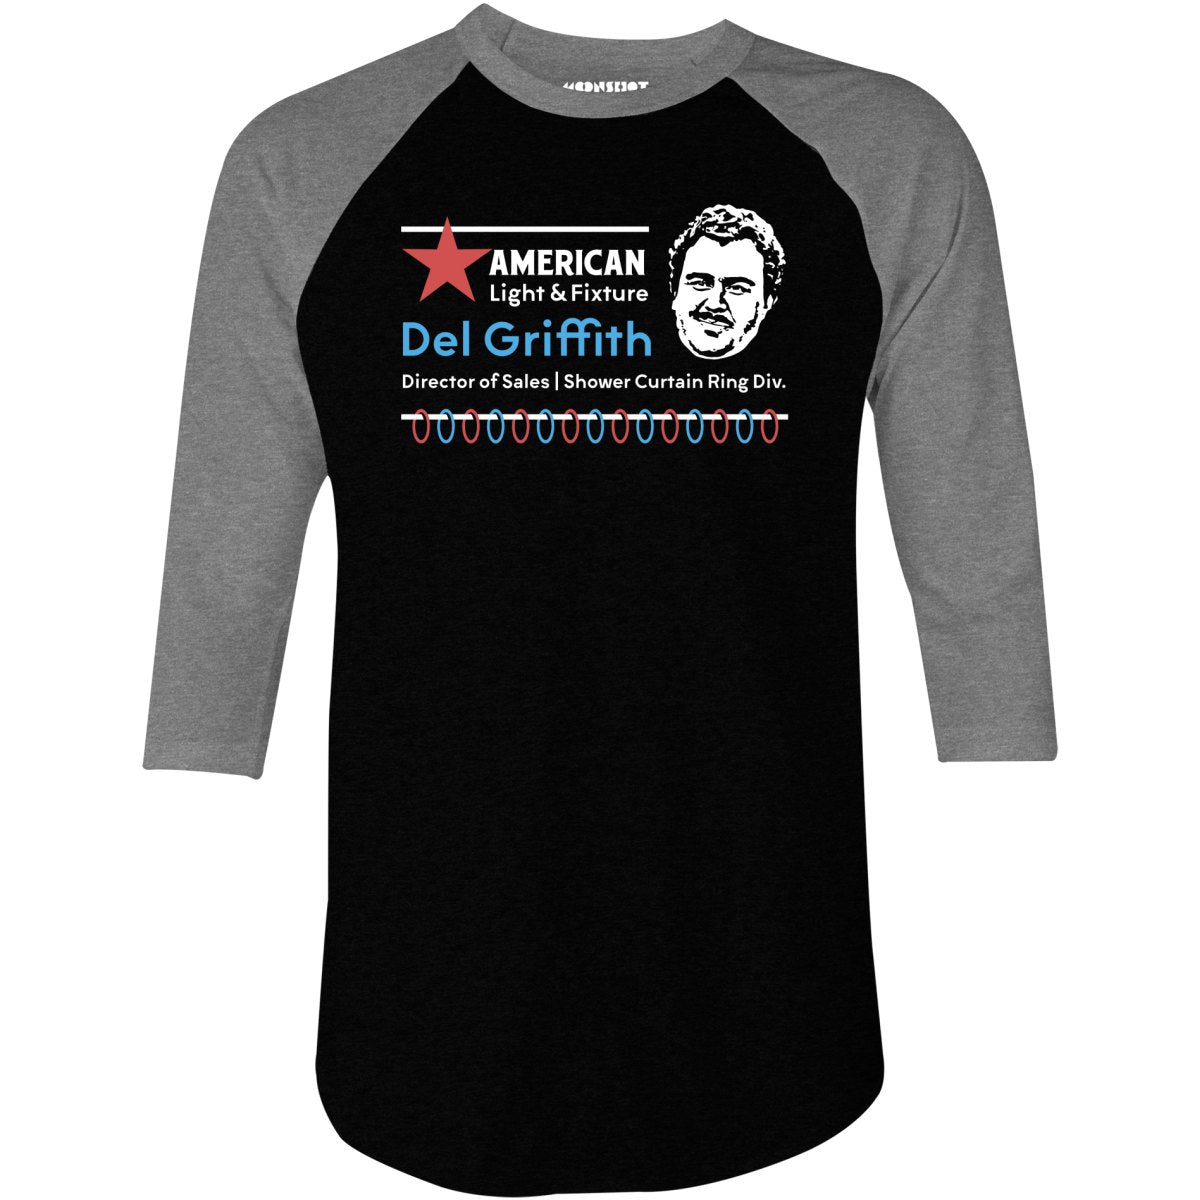 American Light & Fixture - 3/4 Sleeve Raglan T-Shirt